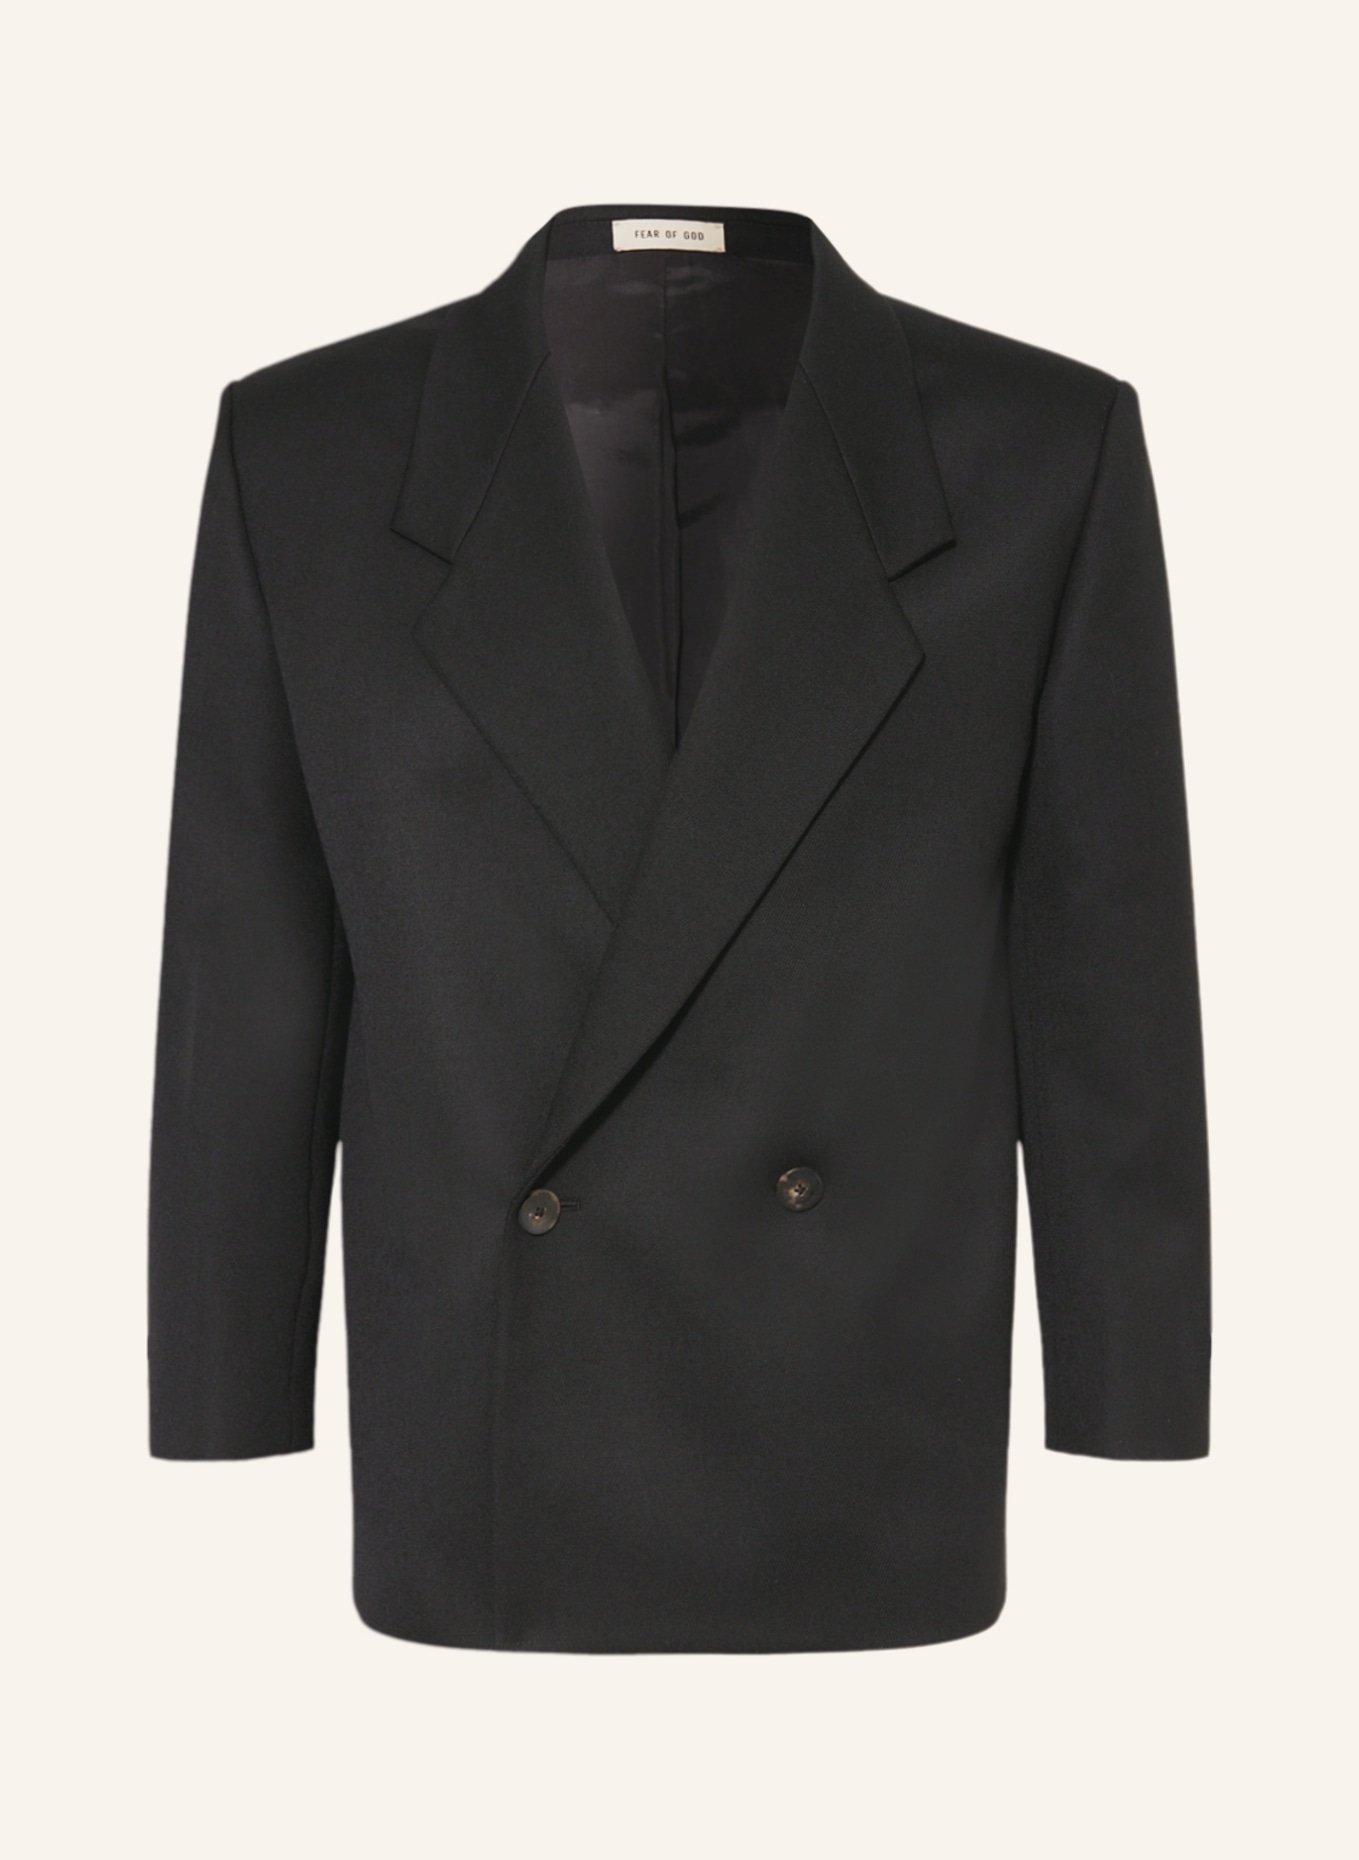 FEAR OF GOD Suit jacket regular fit, Color: BLACK (Image 1)